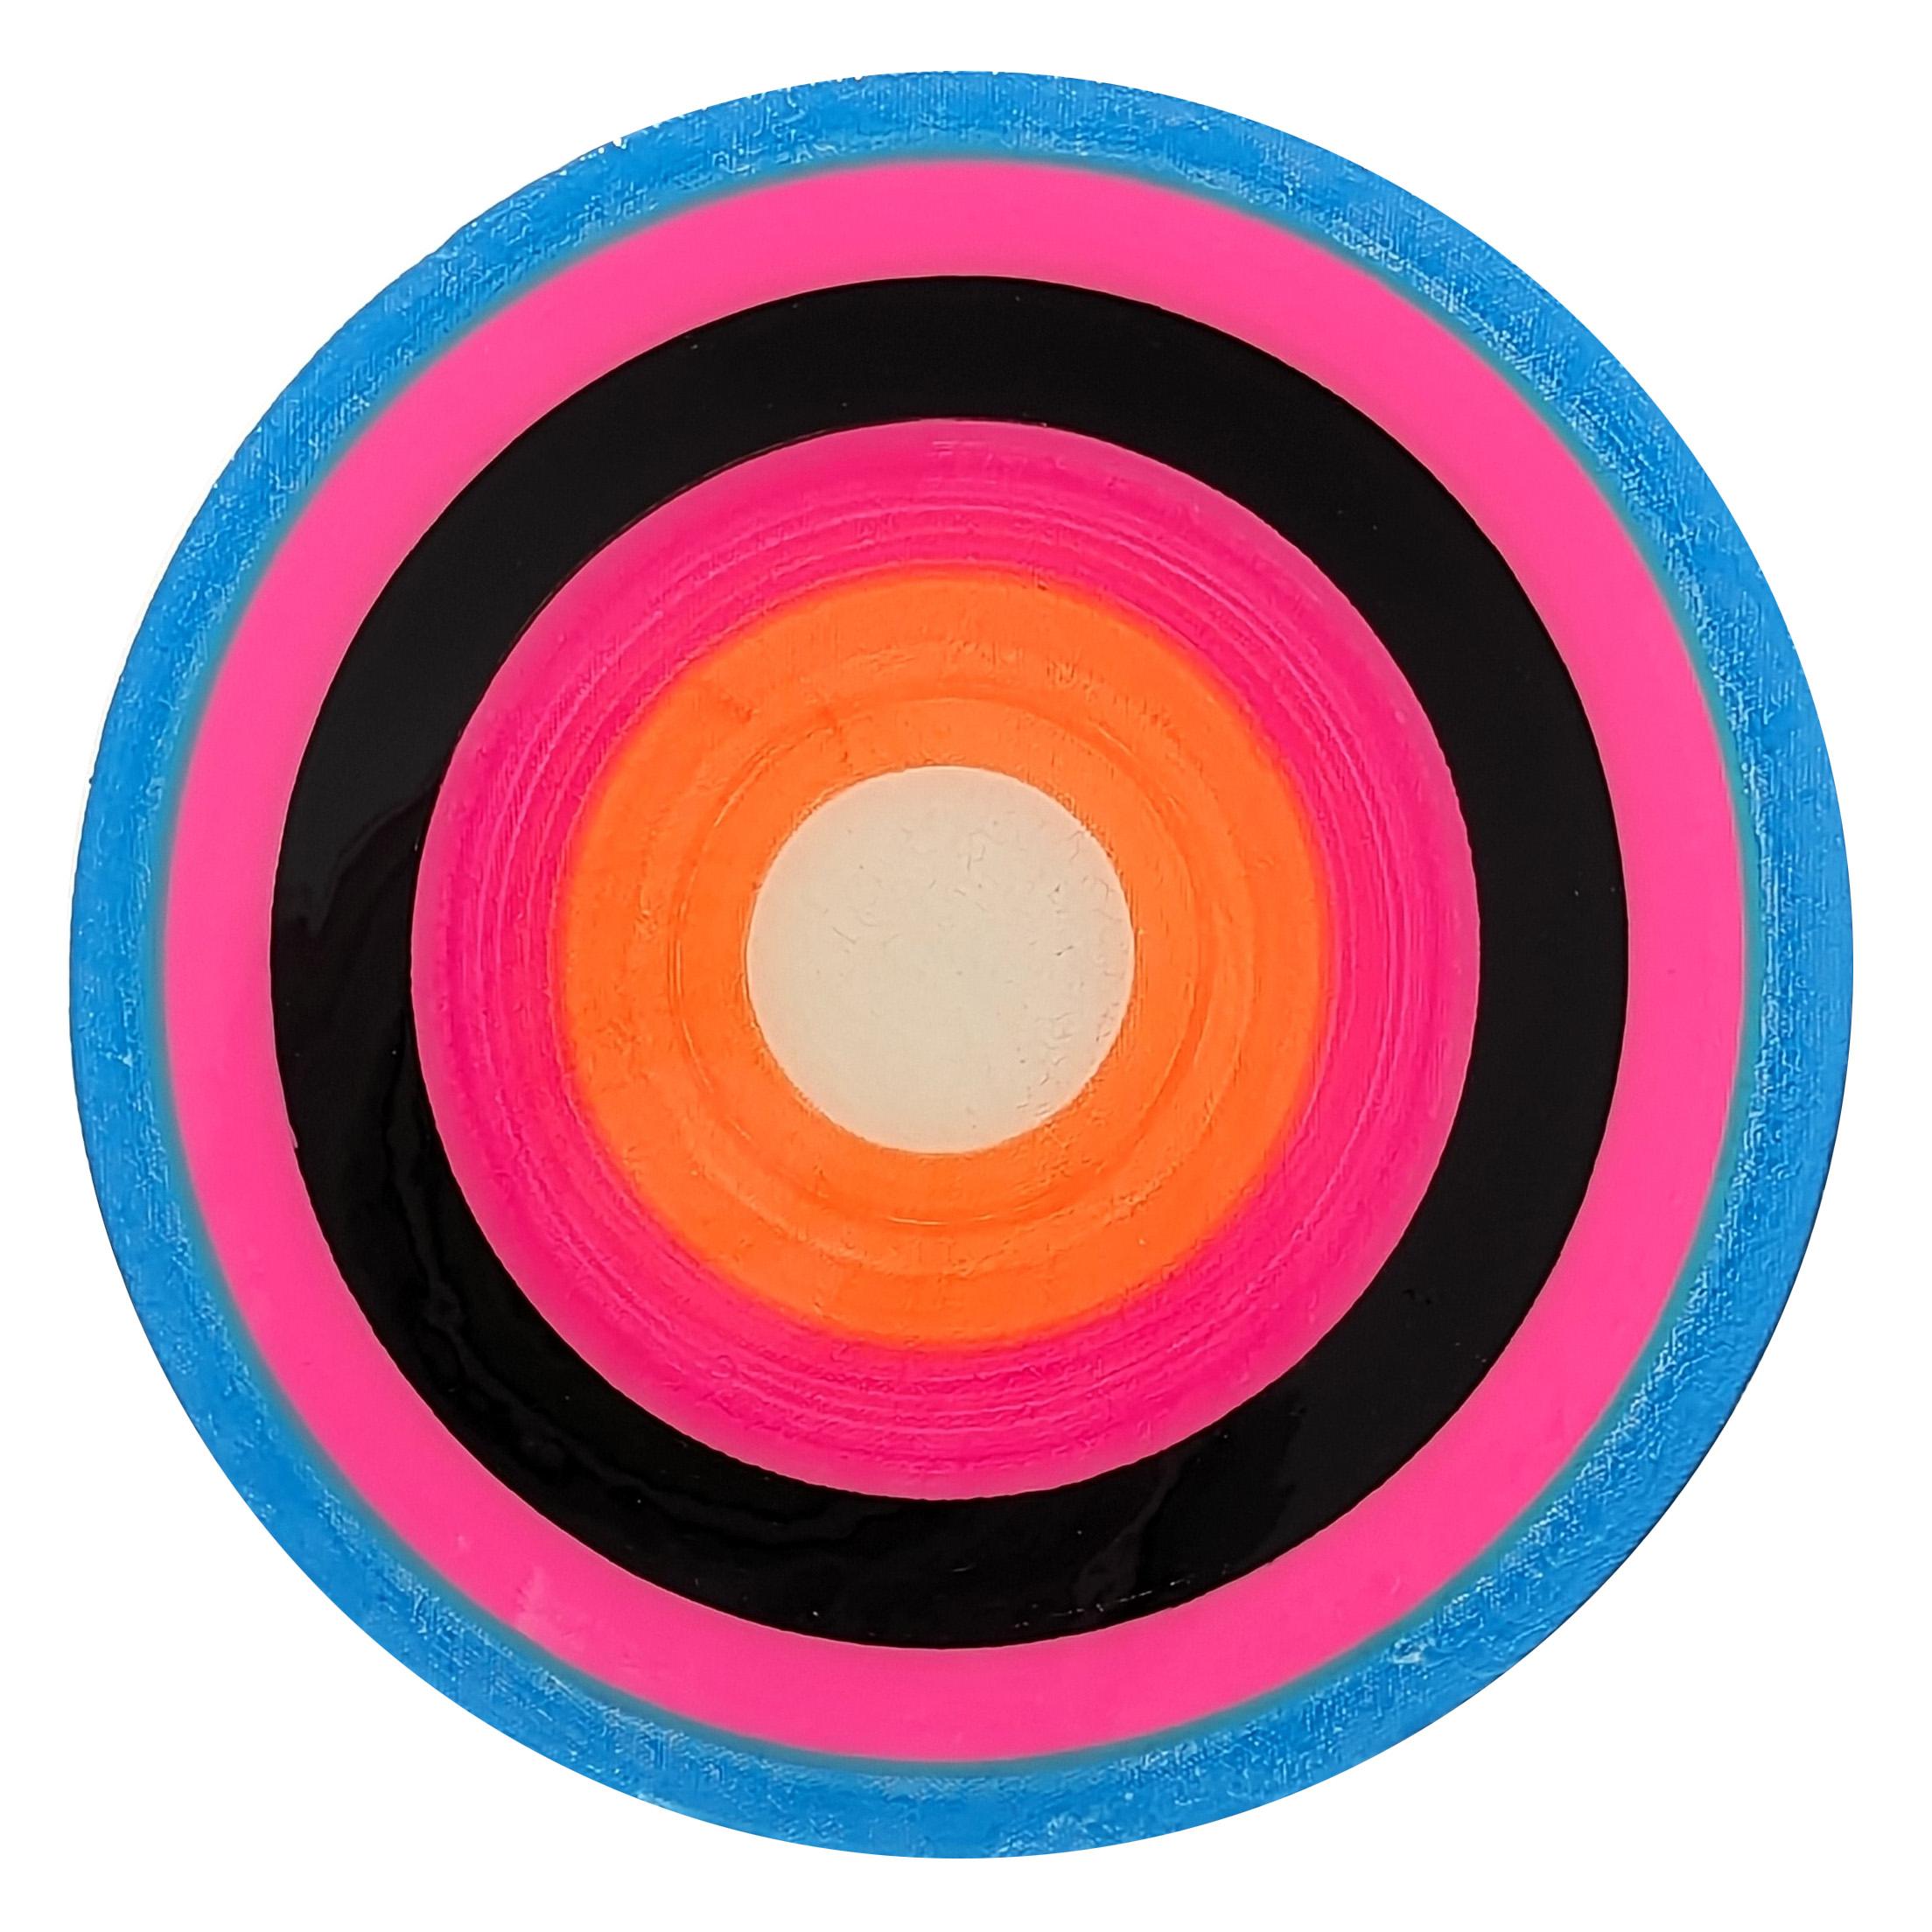 "Study for a Song 5" Peinture contemporaine abstraite colorée en forme de cercle concentrique